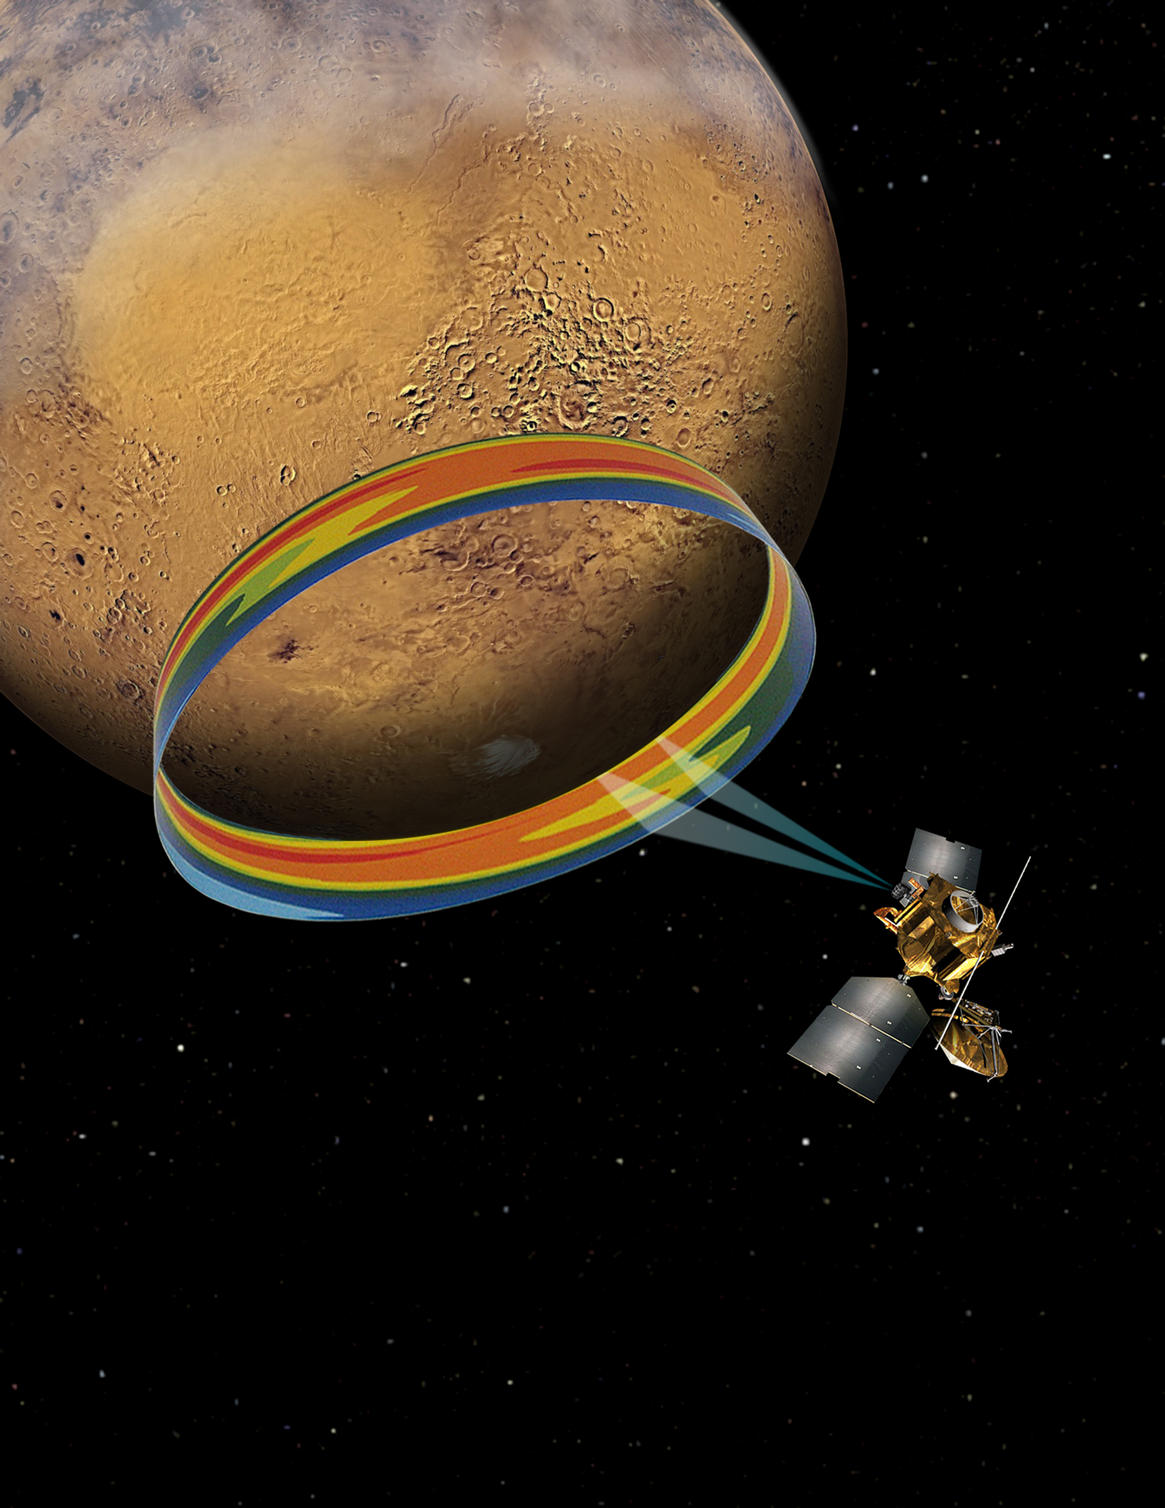 Scanning Martian Atmospheric Temperatures